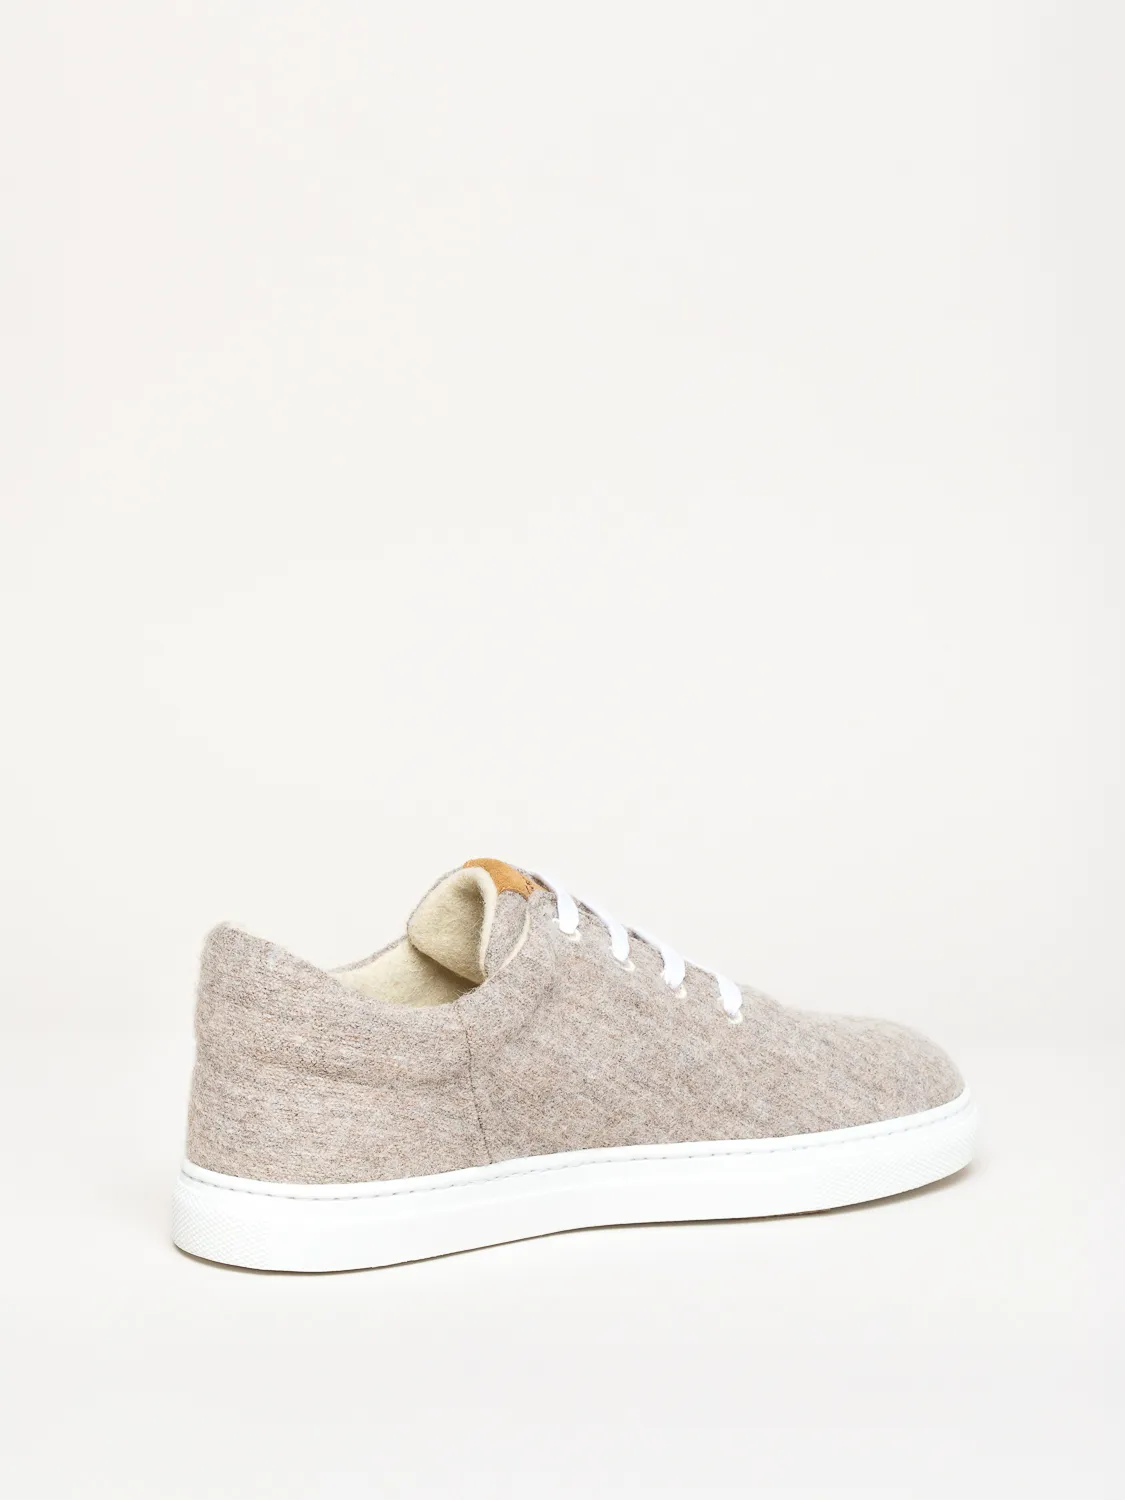 Gottstein-Wool-Walker-101-Woll-Sneaker-beige (3)